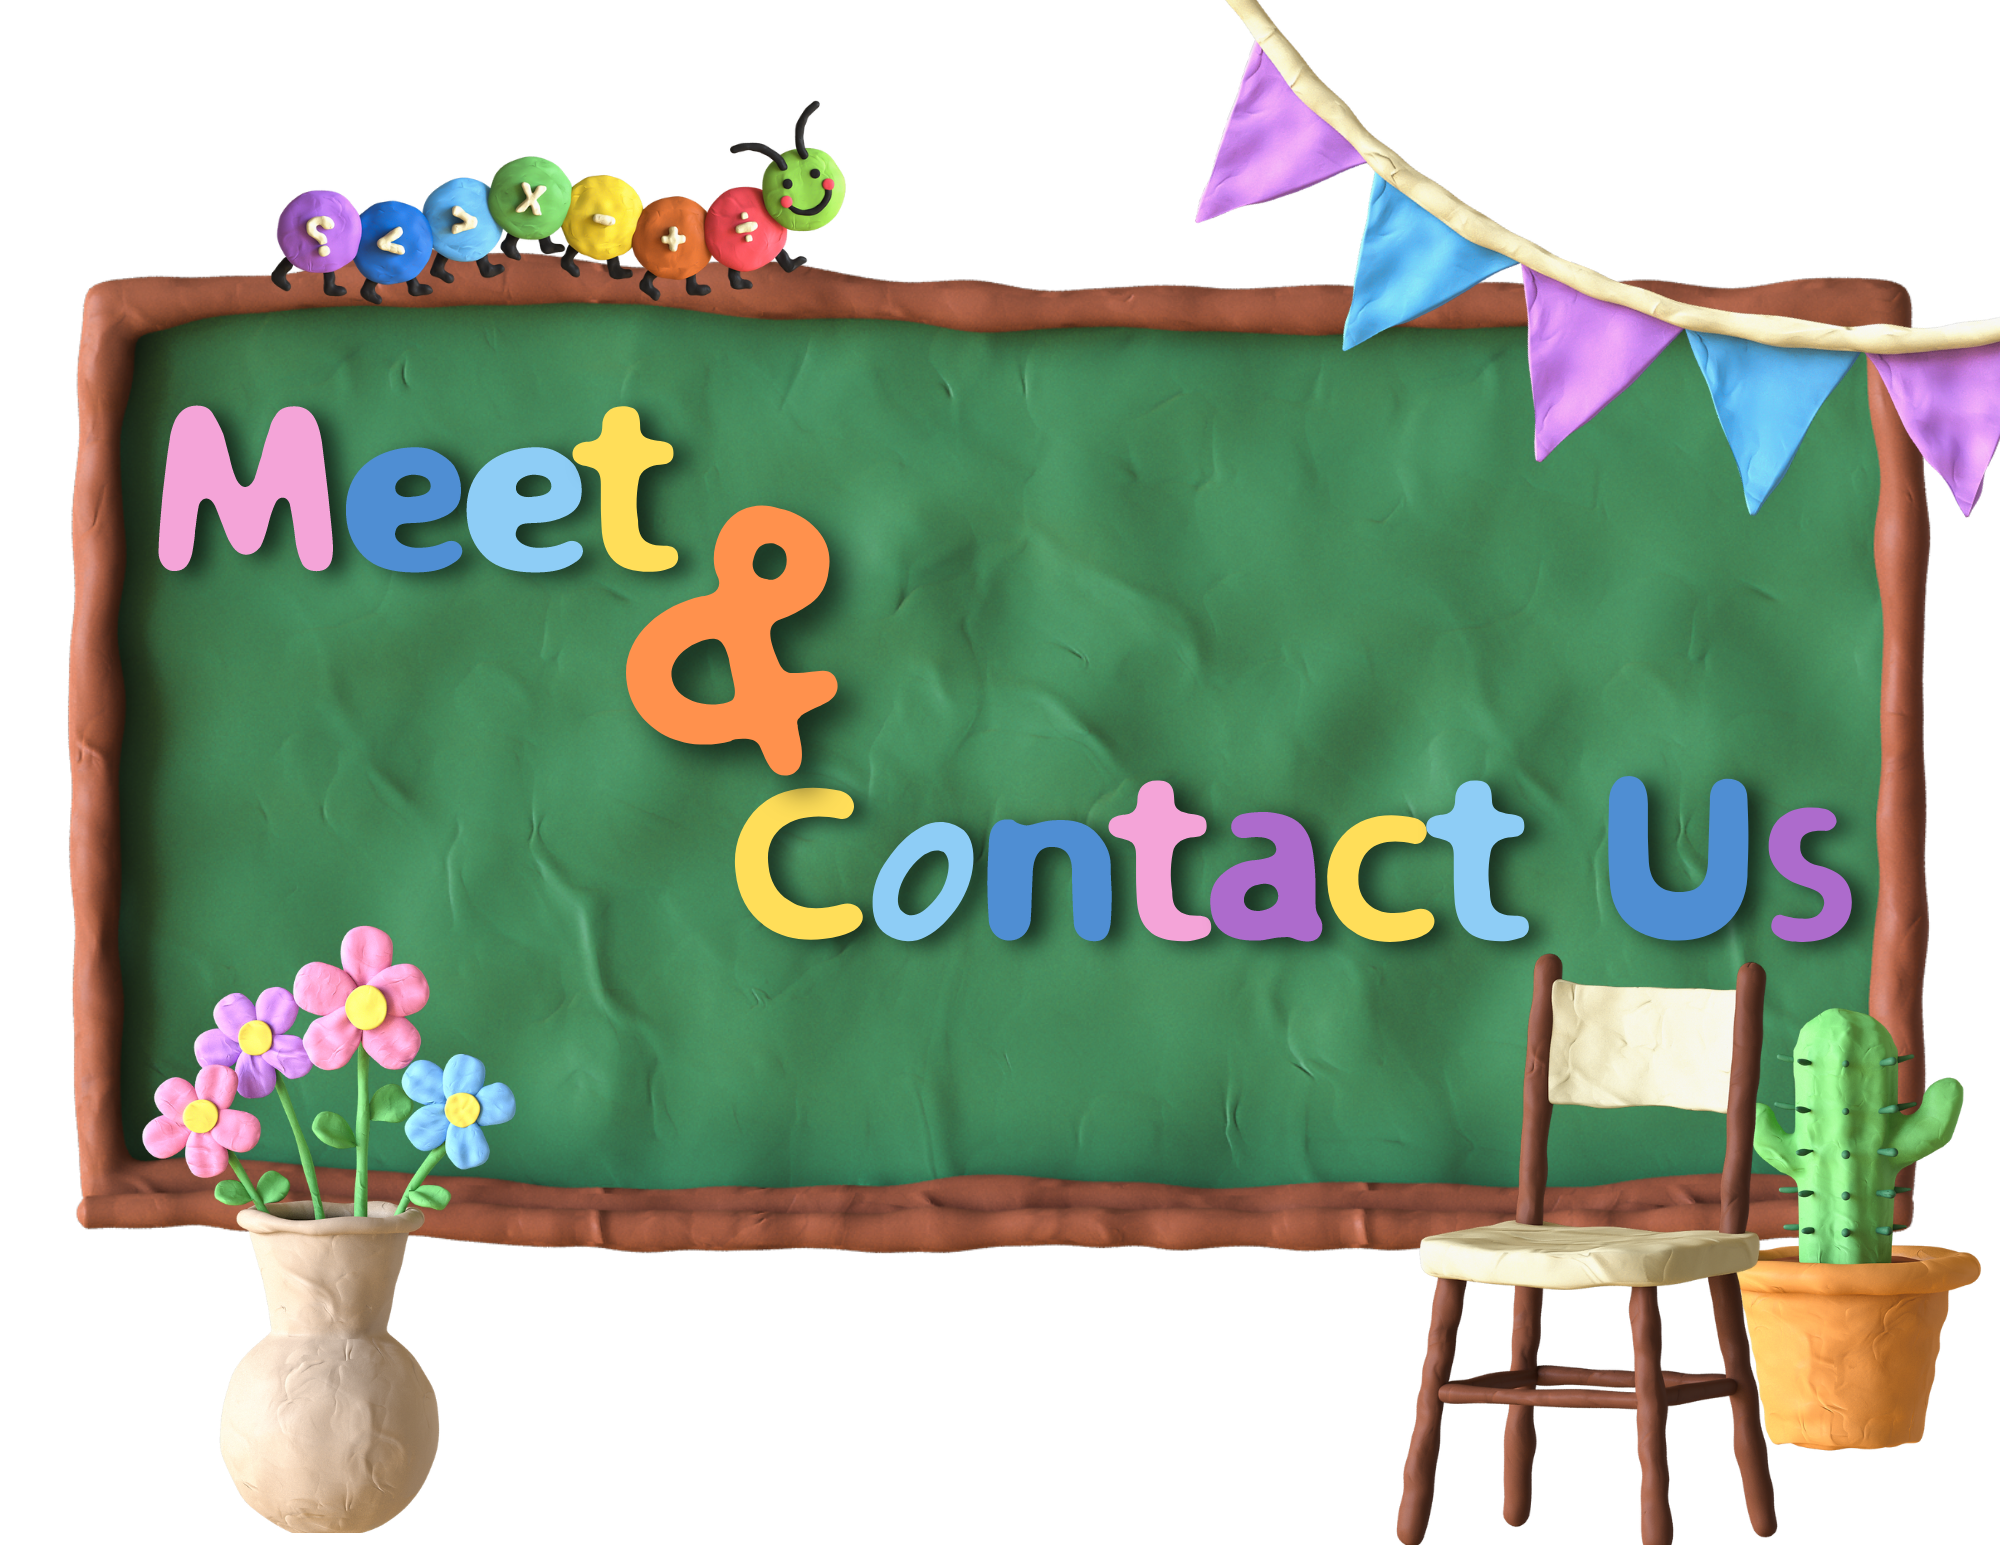 Meet & Contact Us